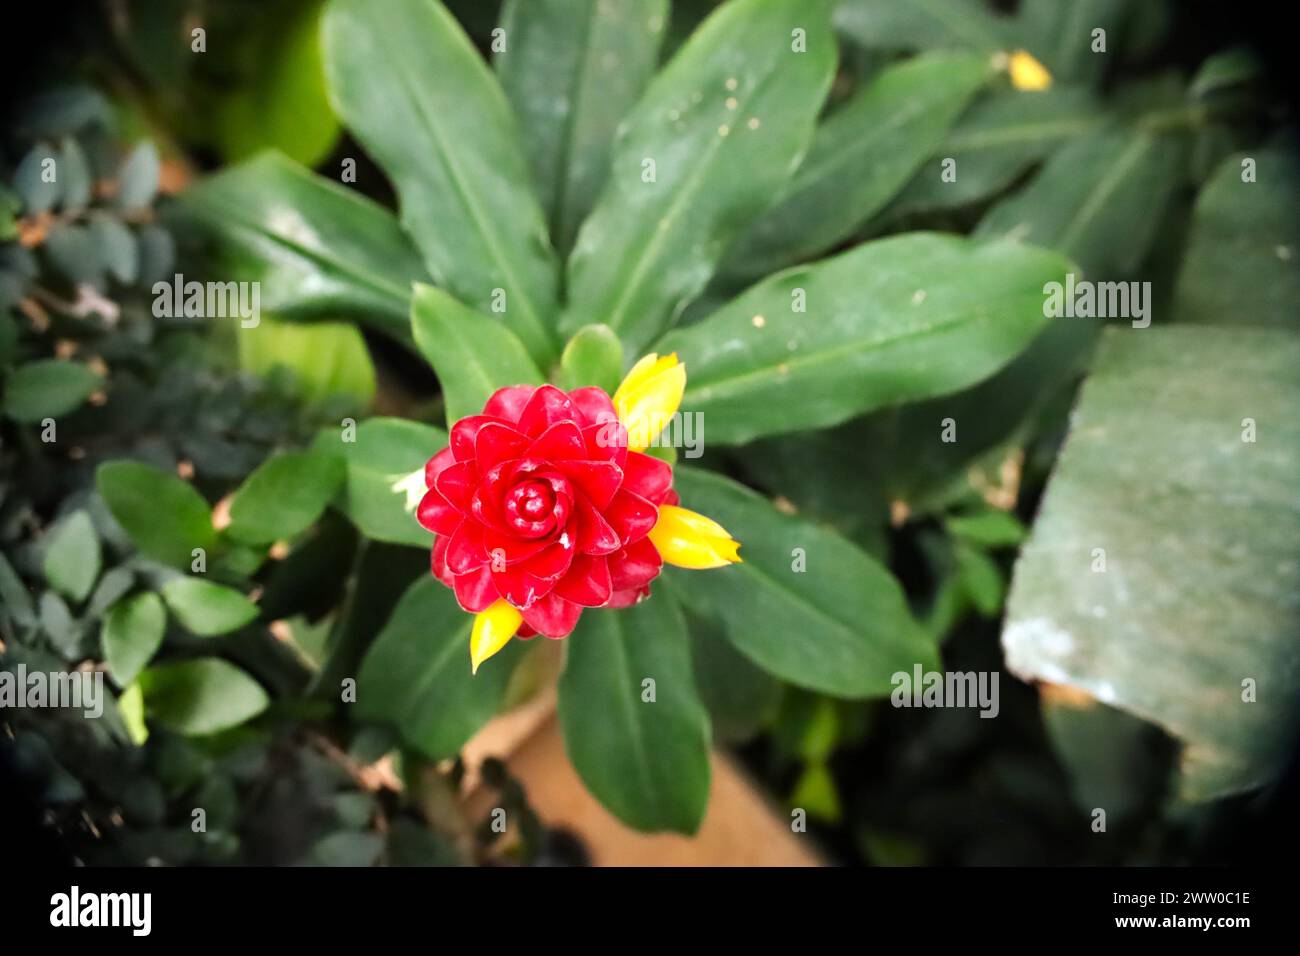 Une image rapprochée de jolies fleurs uniques mises en valeur par la lumière naturelle entourée d'un fond feuillu. Banque D'Images